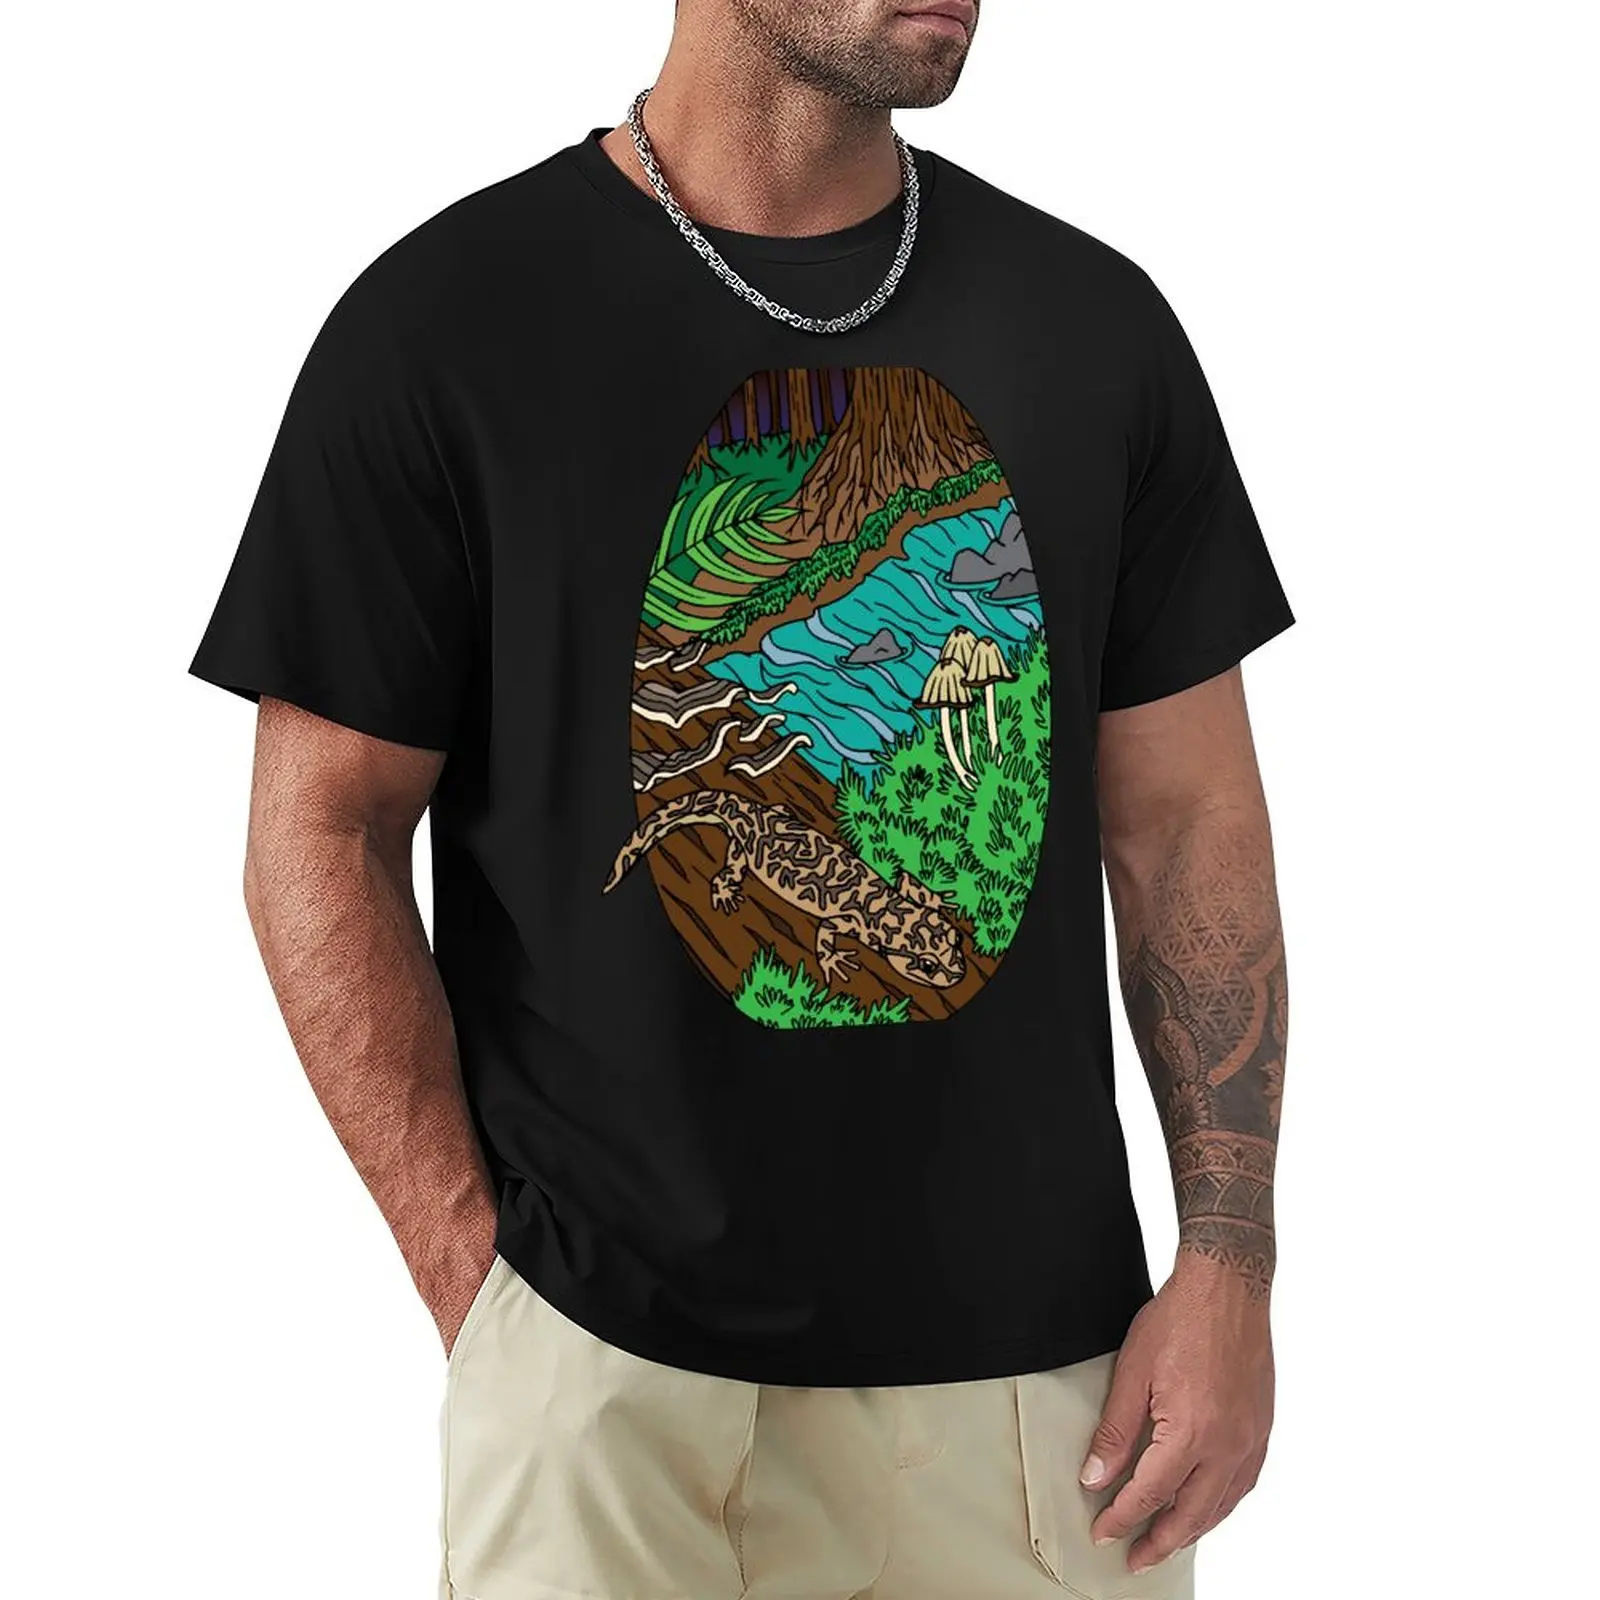 Калифорнийская гигантская Саламандра (Dicamptodon ensatus) Футболка забавные футболки с графикой футболки с тяжелым весом футболки для мужчин